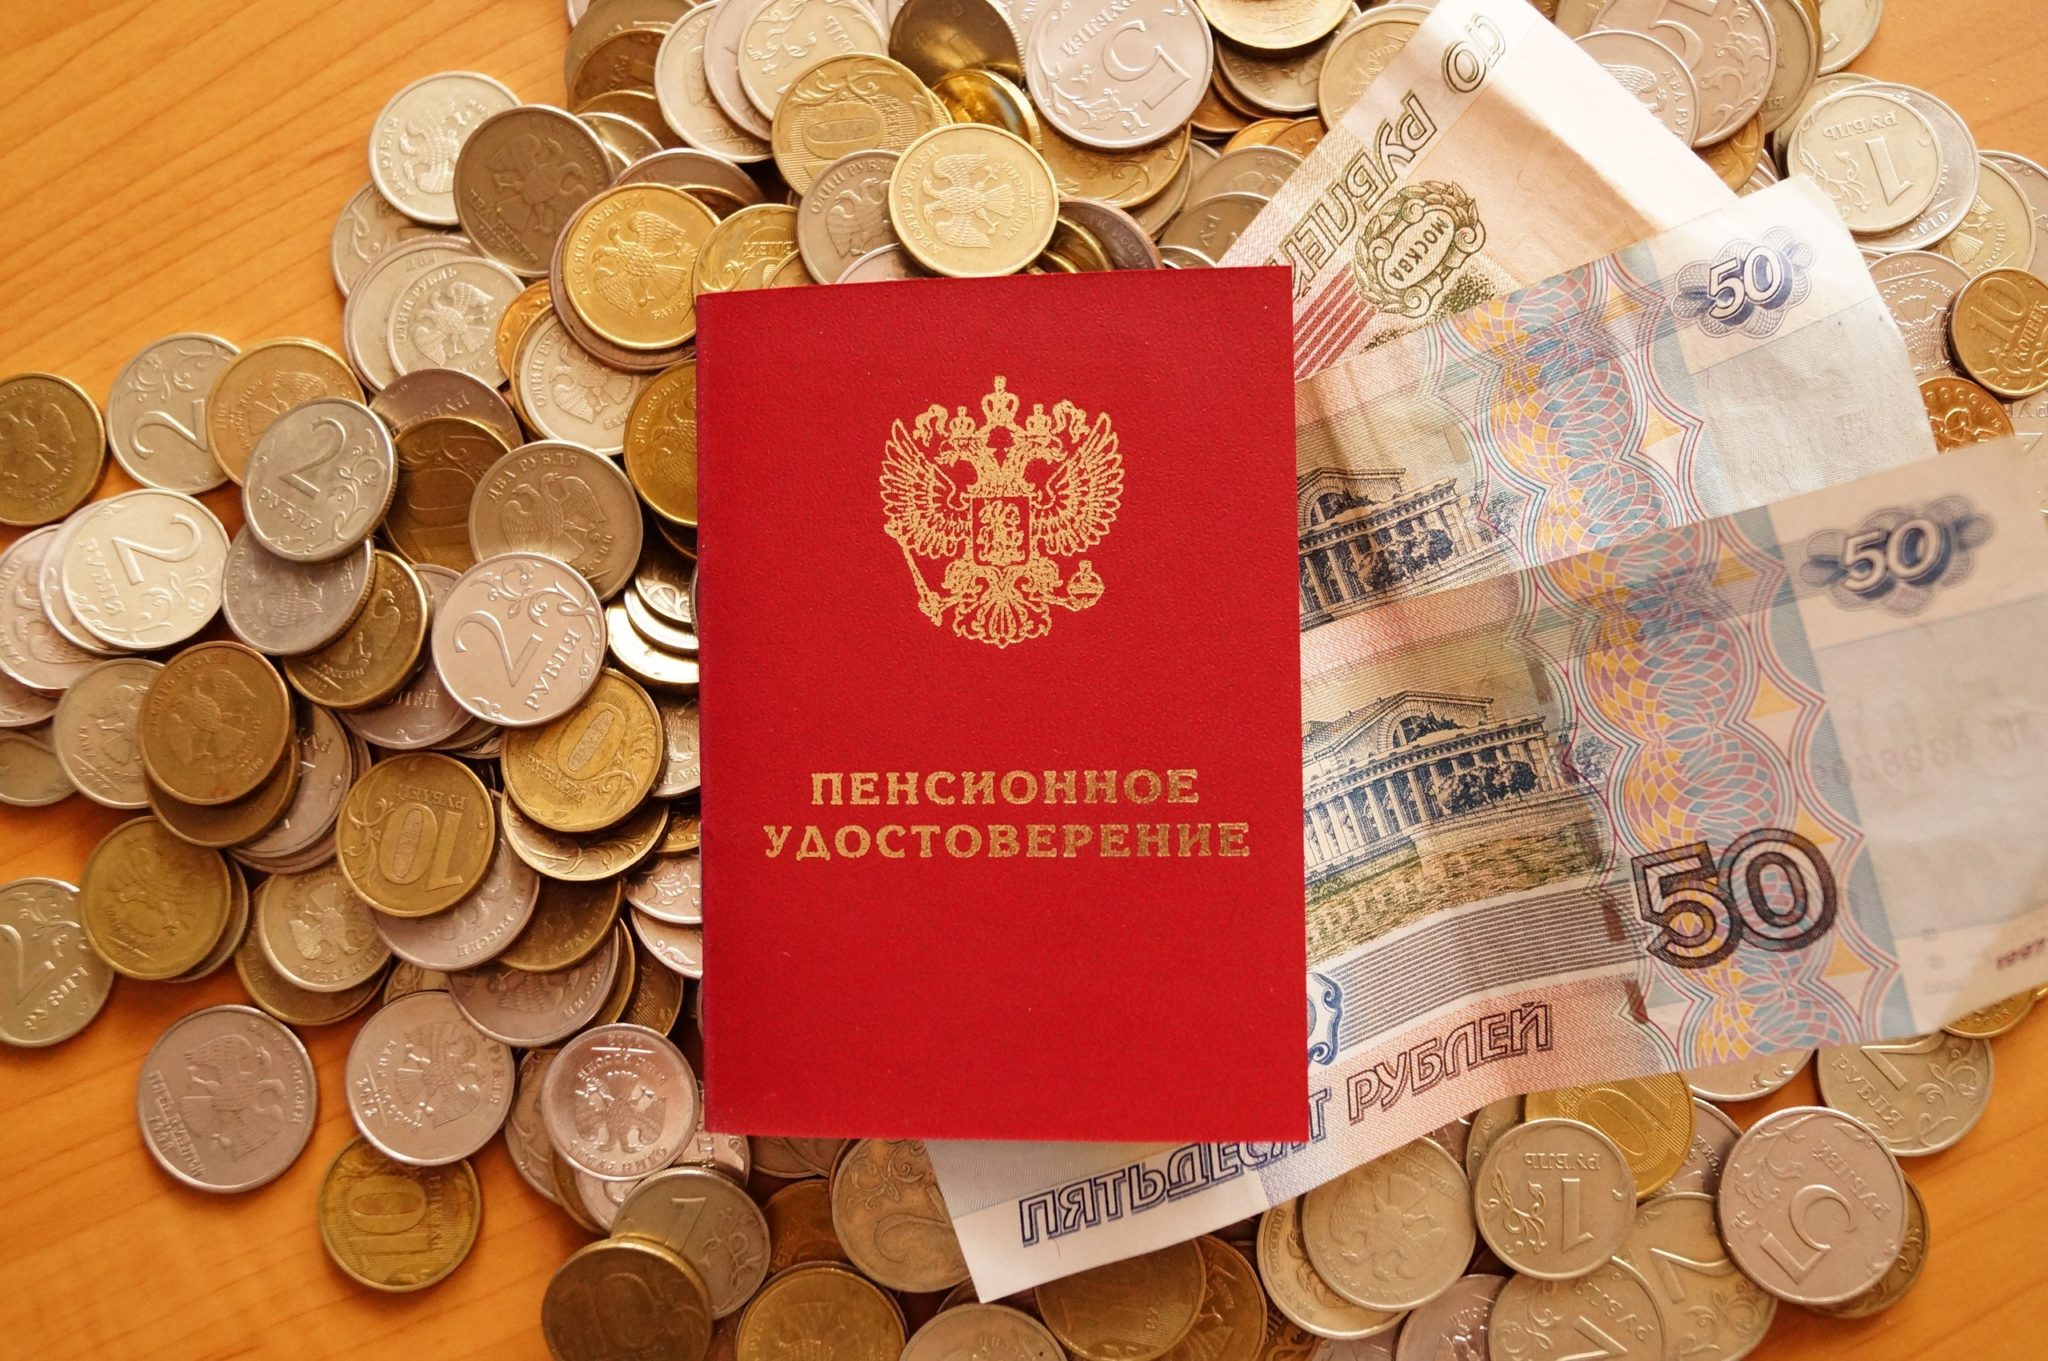 Профсоюзы выступили против новых изменений пенсионной системы РФ